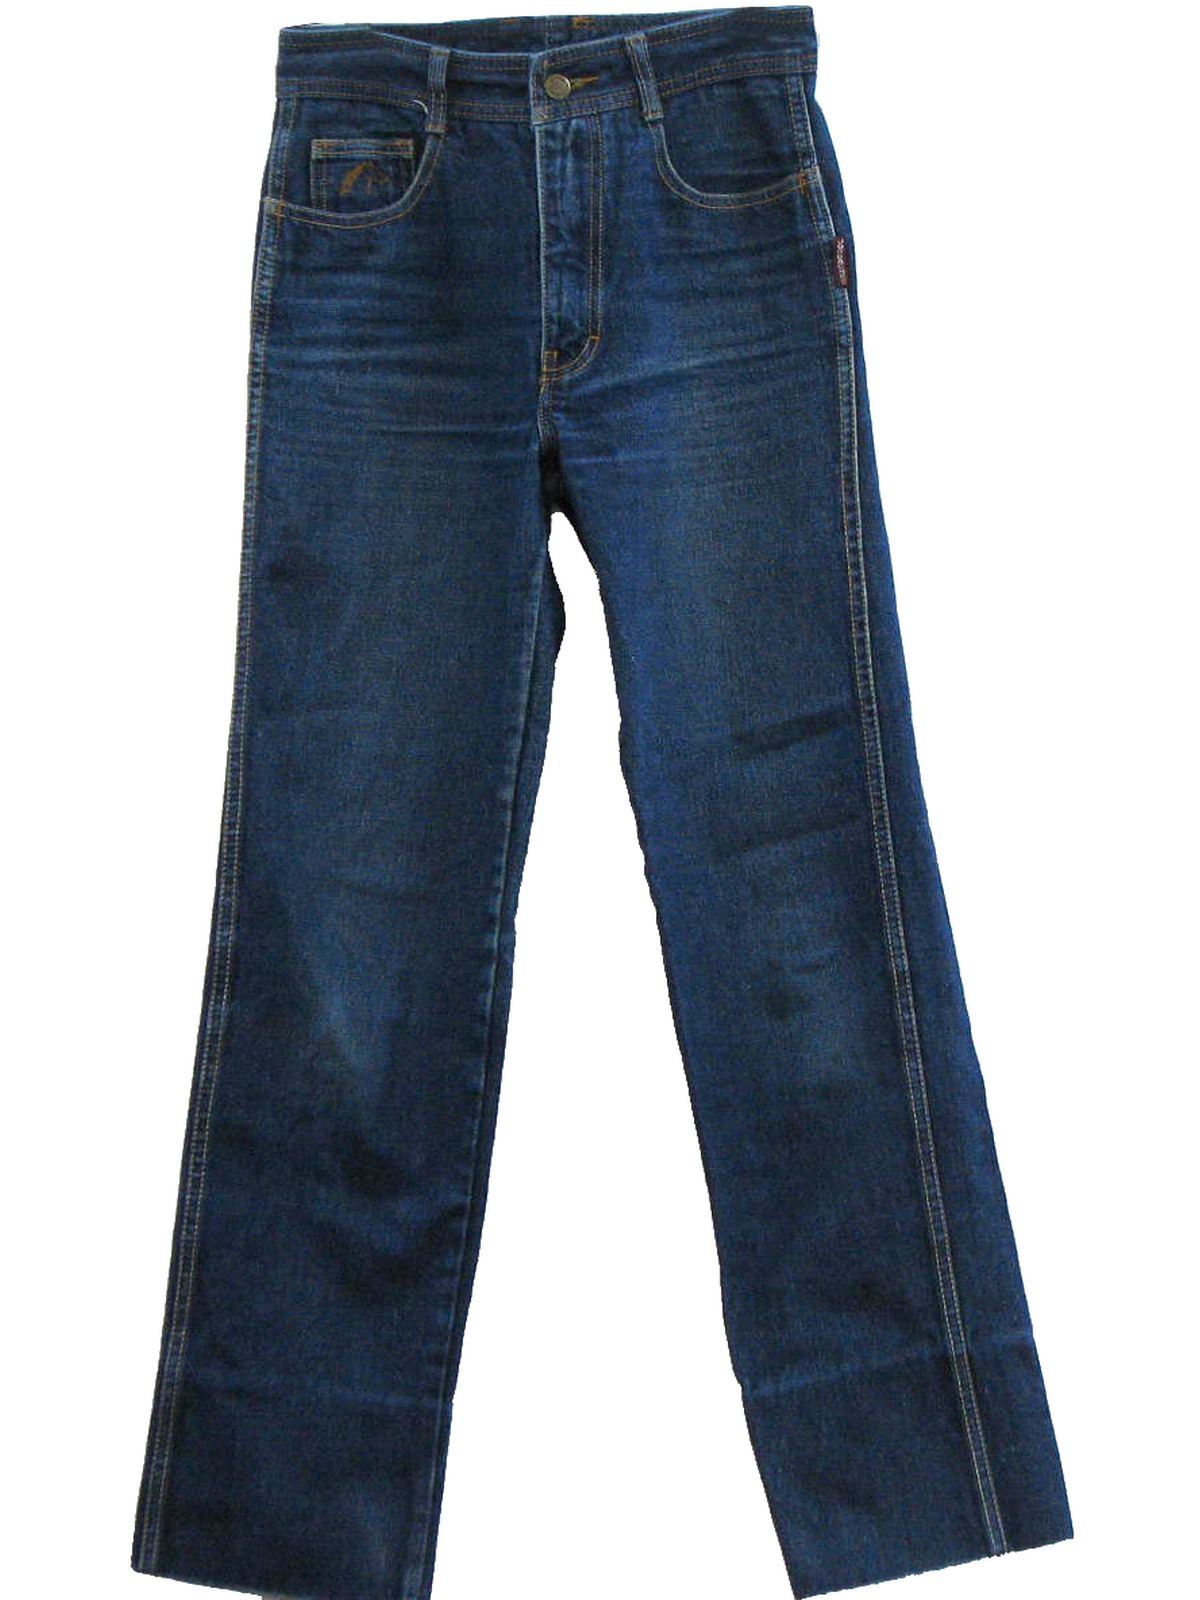 jordache jeans mens